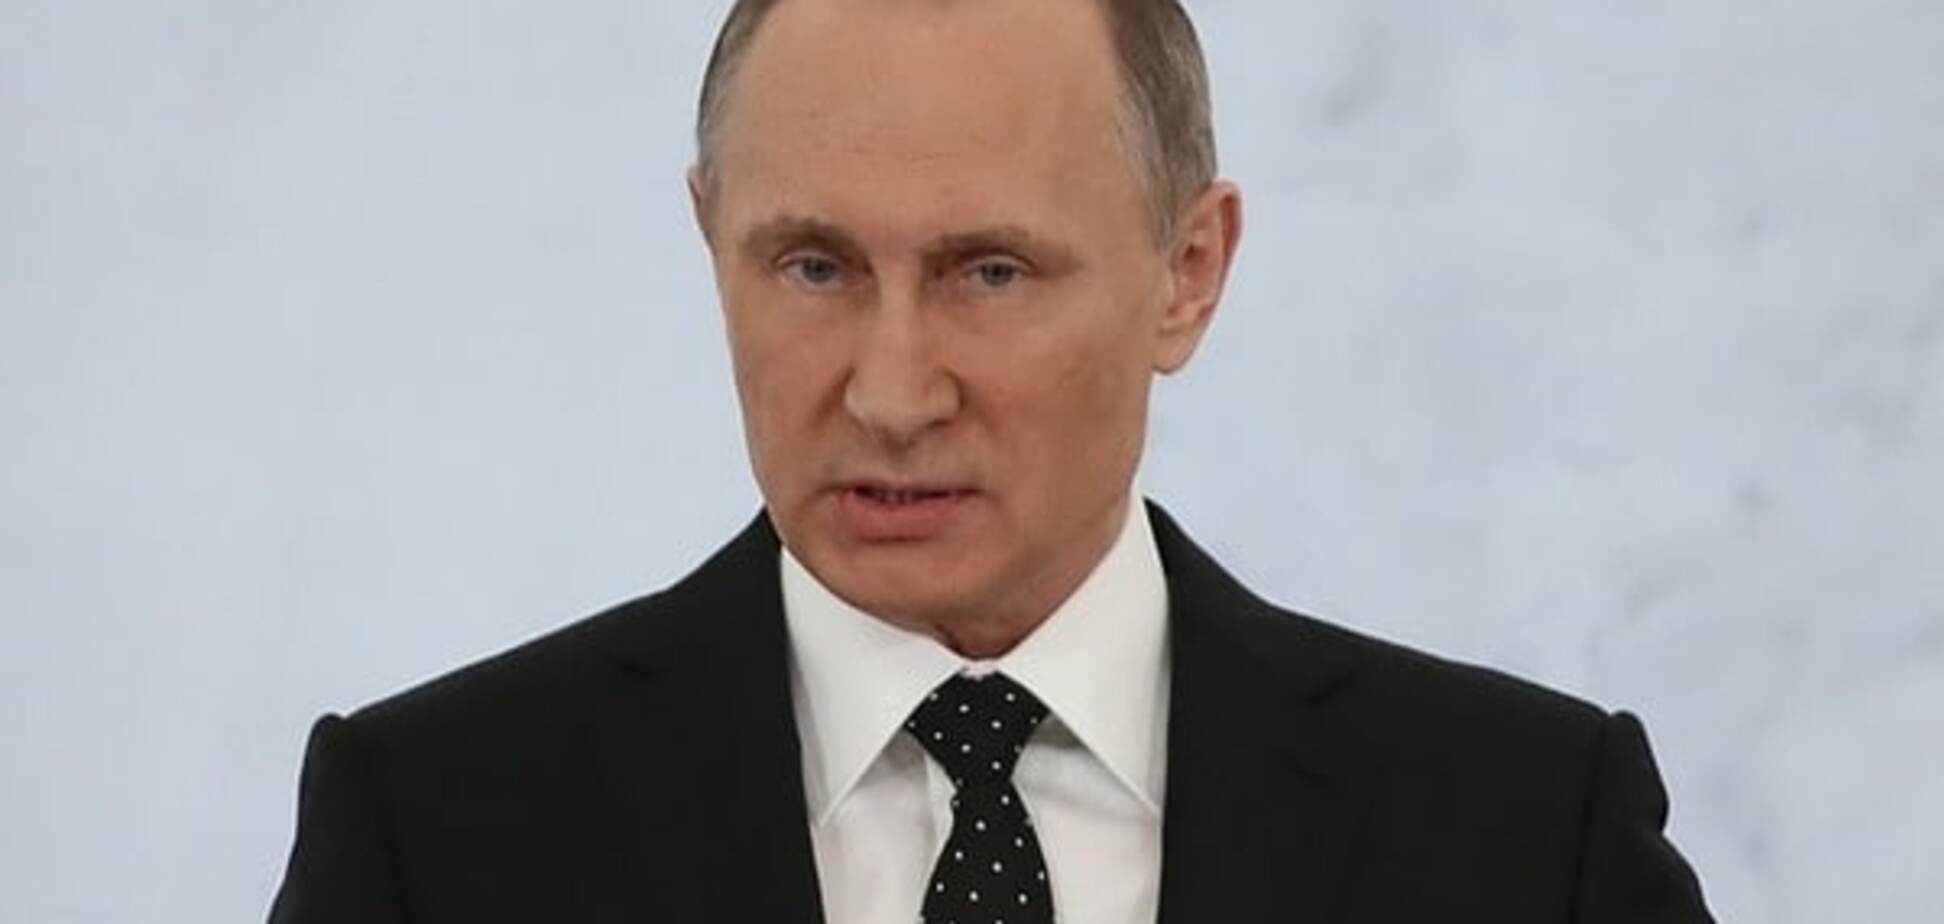 Гаага плаче: юристи розповіли, що загрожує Путіну через війну в Україні